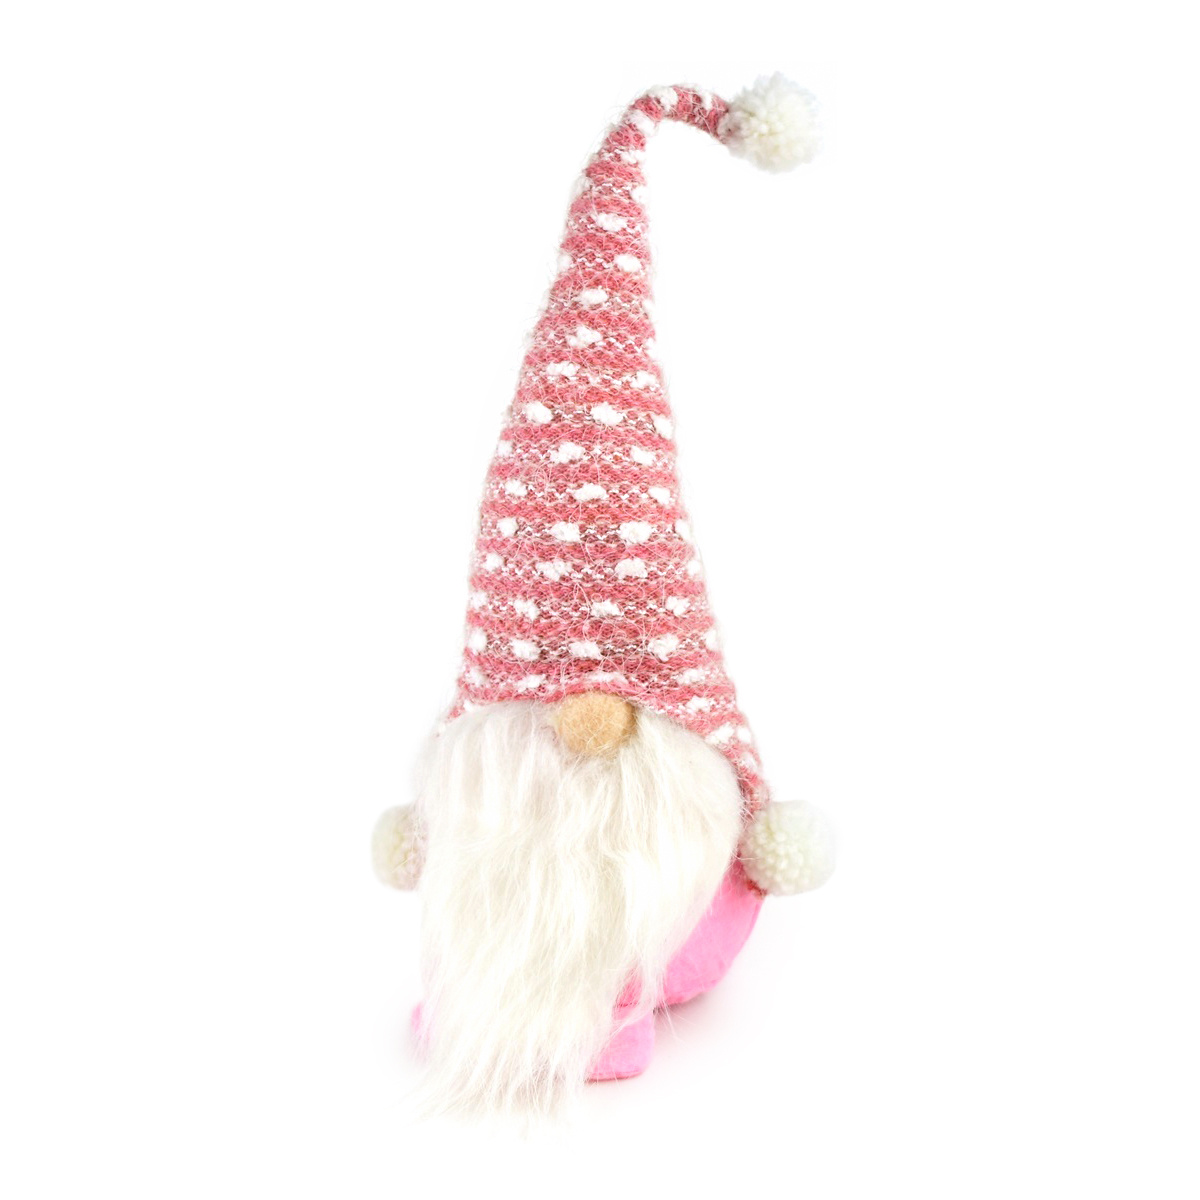 Vianočný textilný škriatok Pinky, 35 cm